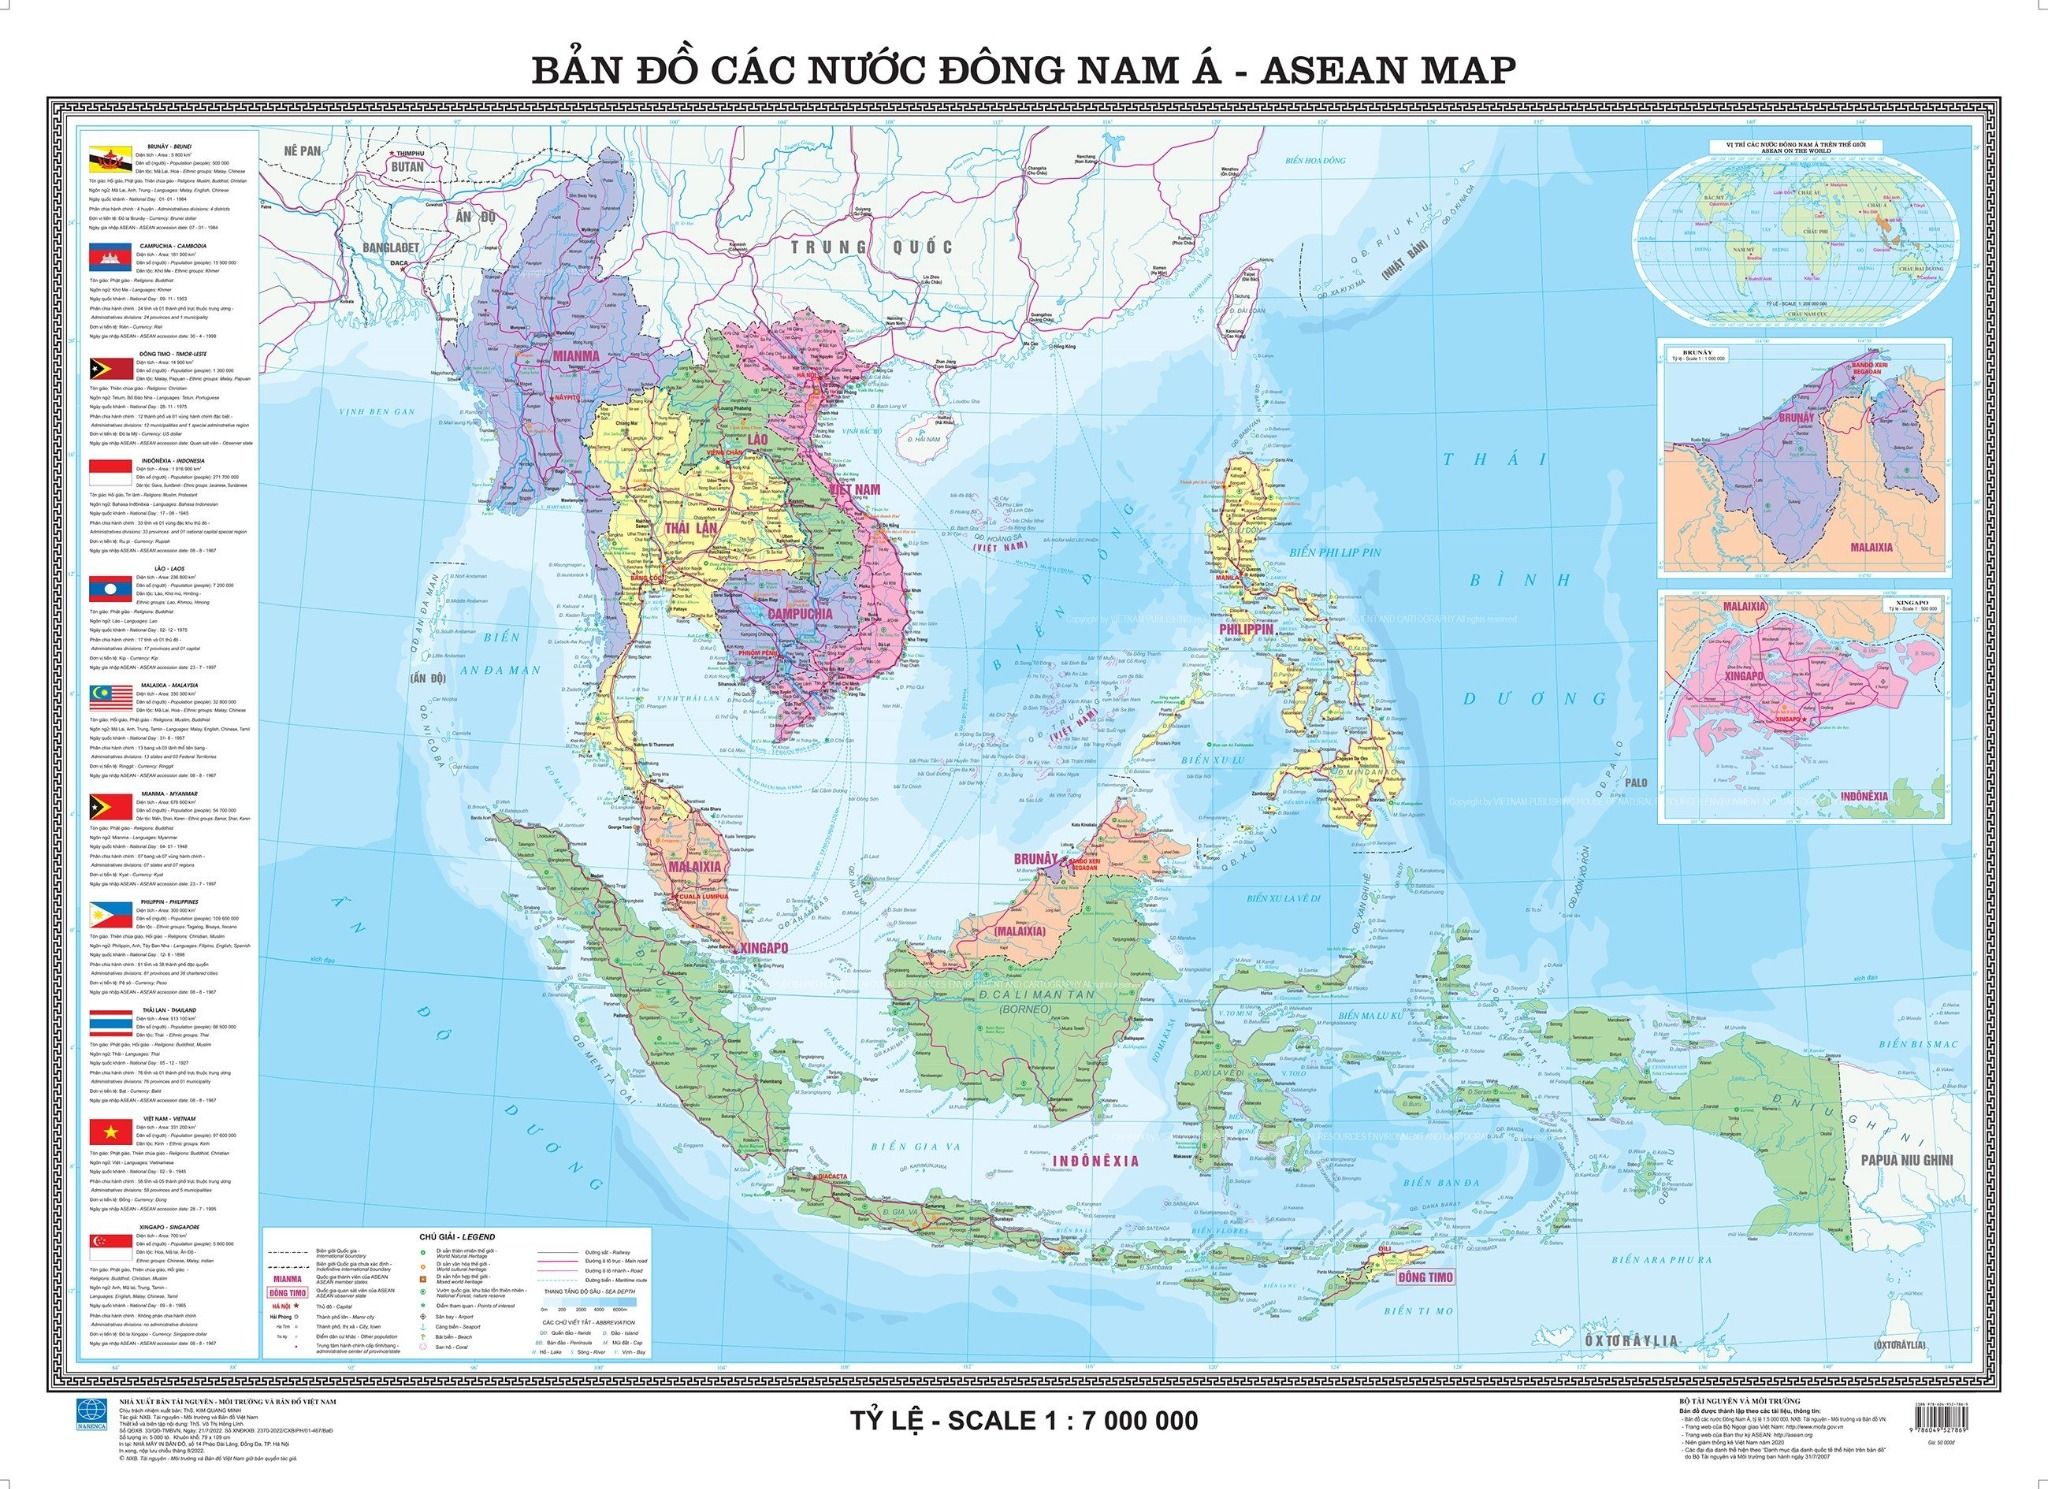 Bản đồ ASEAN 2024 sẽ đưa chúng ta đến với một khu vực Thái Bình Dương đầy tiềm năng và sự phát triển. Cùng tìm hiểu về những đổi mới kinh tế, chính trị trong tương lai của những quốc gia trong khối ASEAN và cùng nhau xây dựng một tương lại tươi sáng.